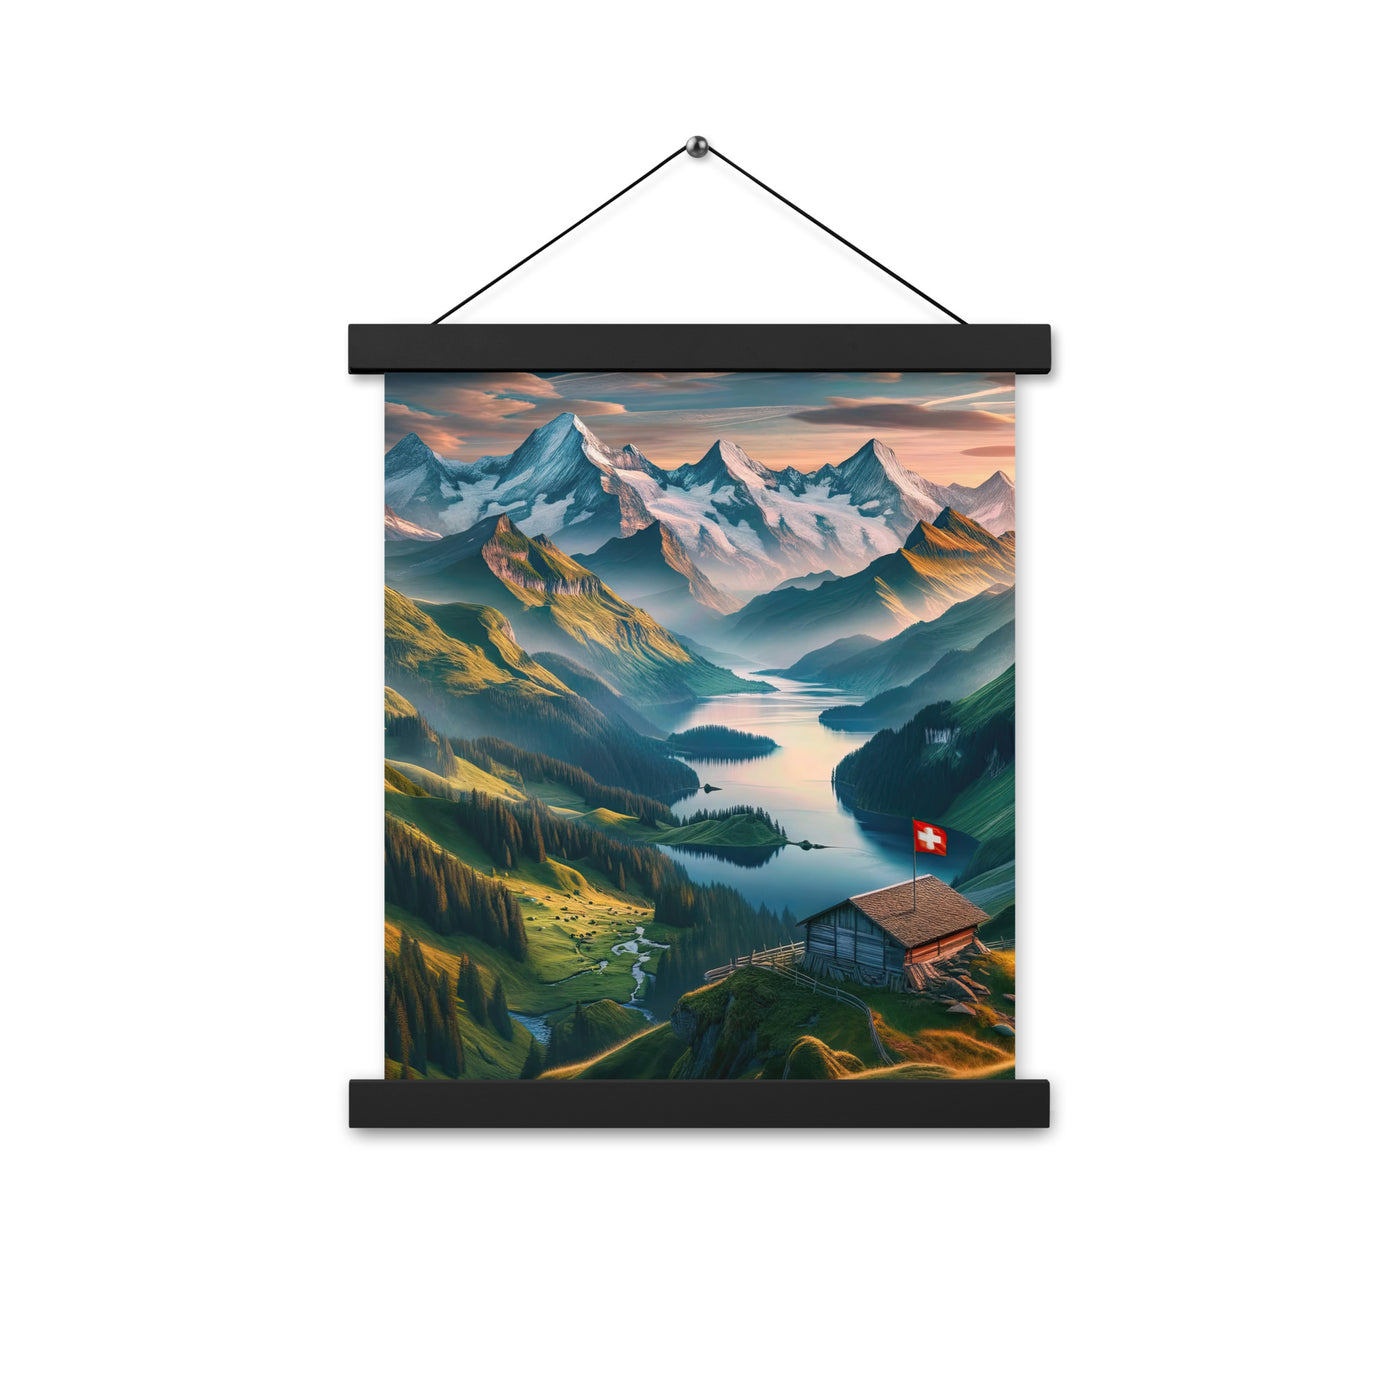 Schweizer Flagge, Alpenidylle: Dämmerlicht, epische Berge und stille Gewässer - Premium Poster mit Aufhängung berge xxx yyy zzz 27.9 x 35.6 cm